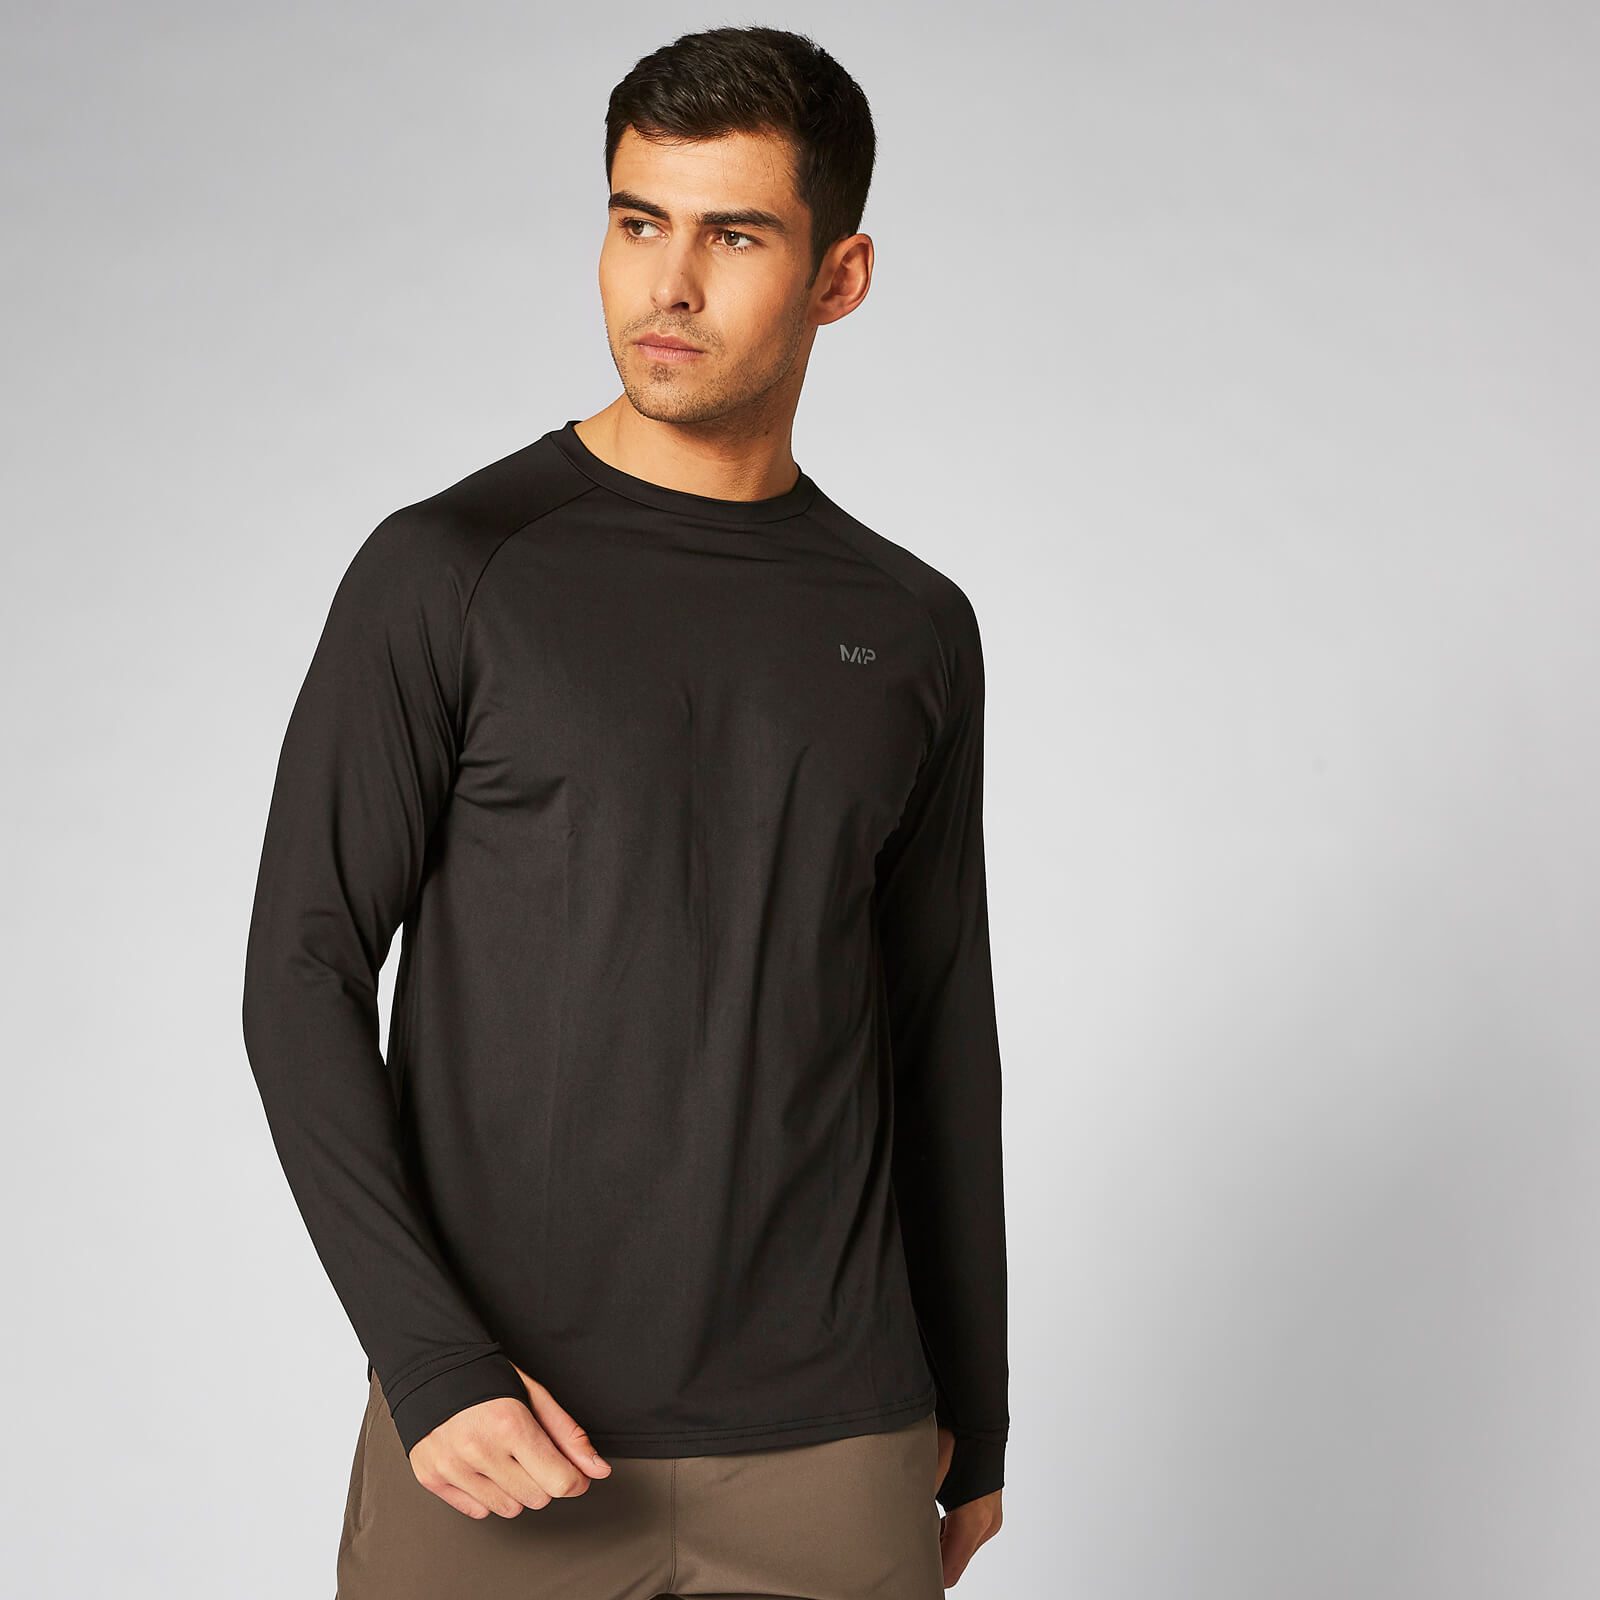 MP Dry Tech Infinity Long Sleeve T-Shirt - Black